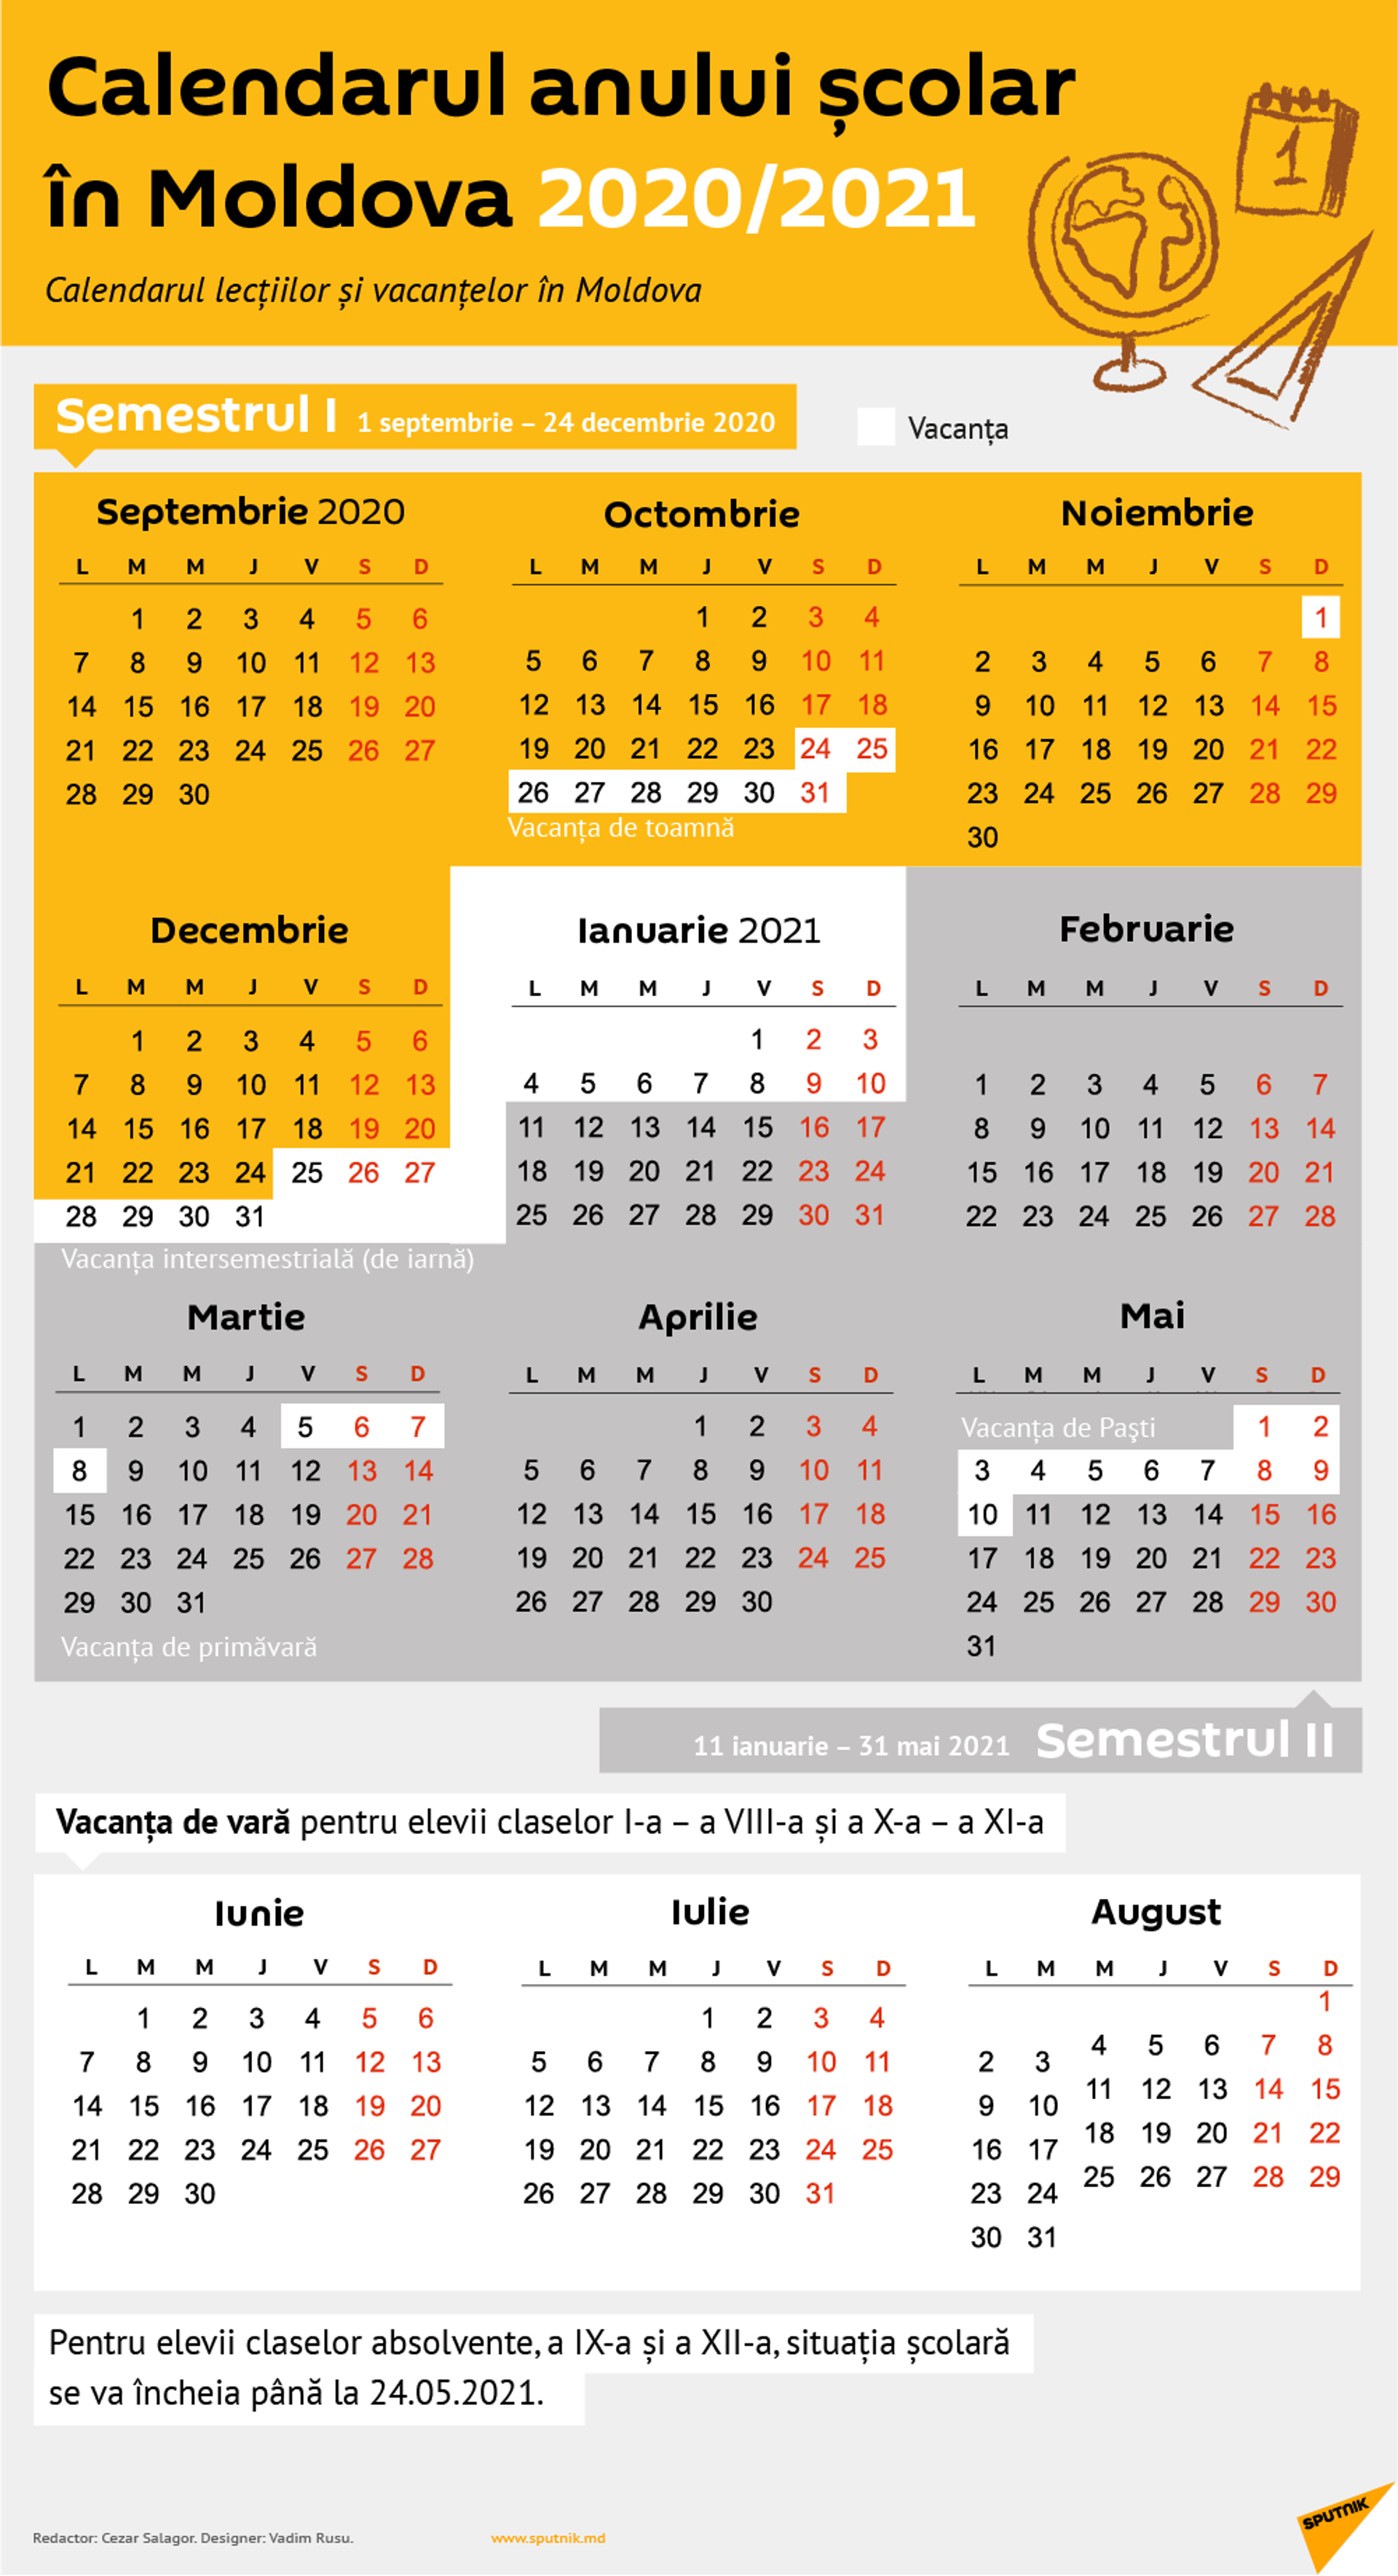 Vacanța de primăvară 2021: Câte zile va dura - Sputnik Moldova, 1920, 24.02.2021